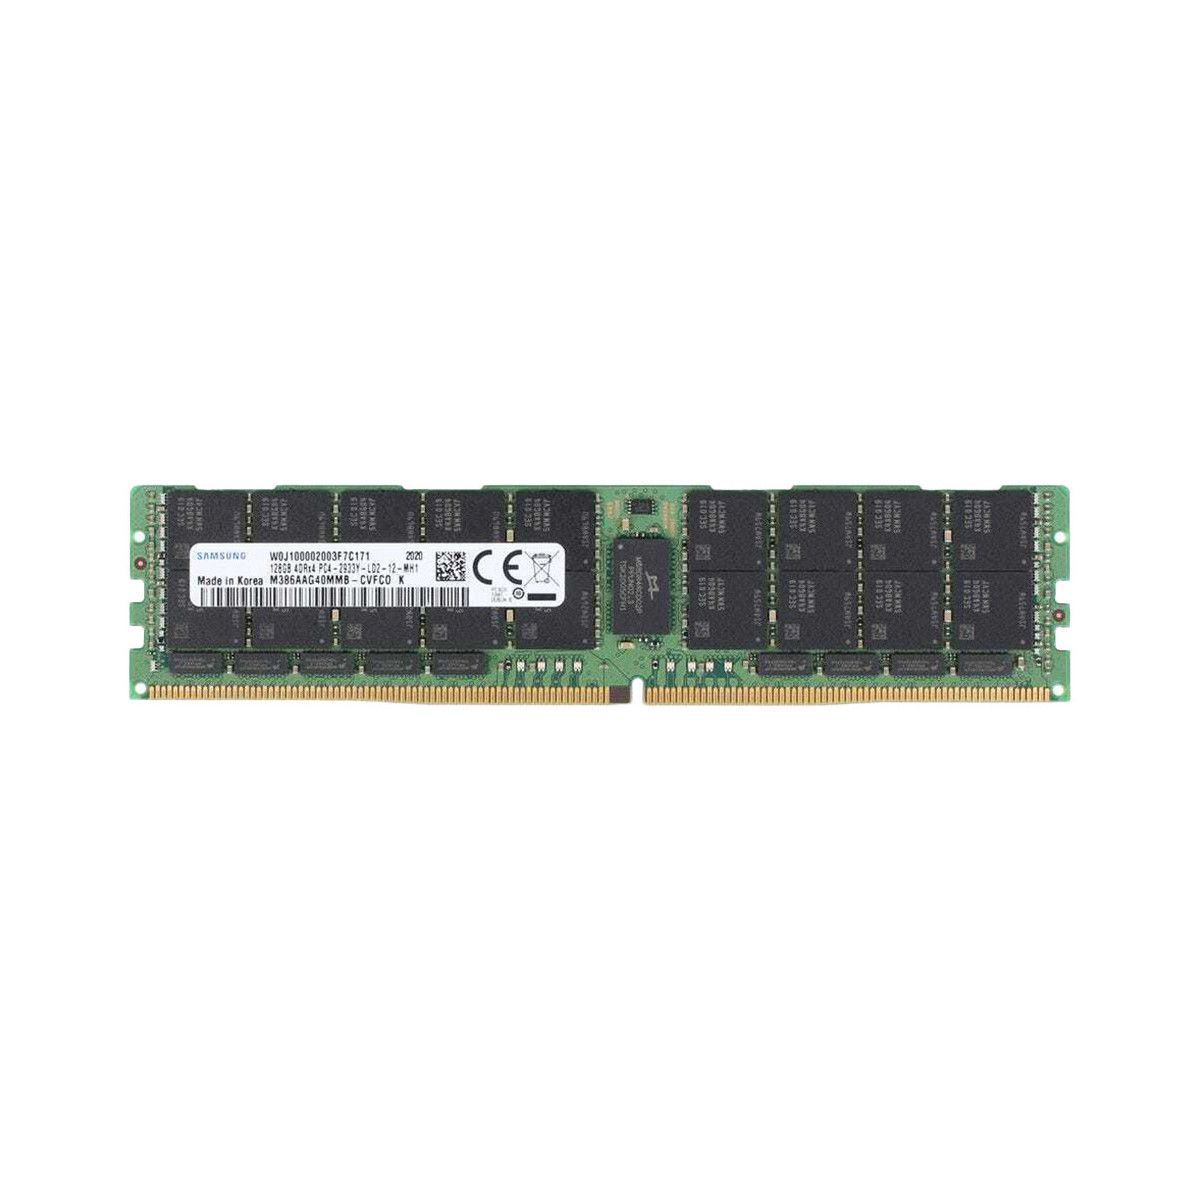 P00928-B21-MS - Memstar 1x 128GB DDR4-2933 LRDIMM PC4-23466U-L - Mem-star Compatible OEM Memoria 1 - Memstar 